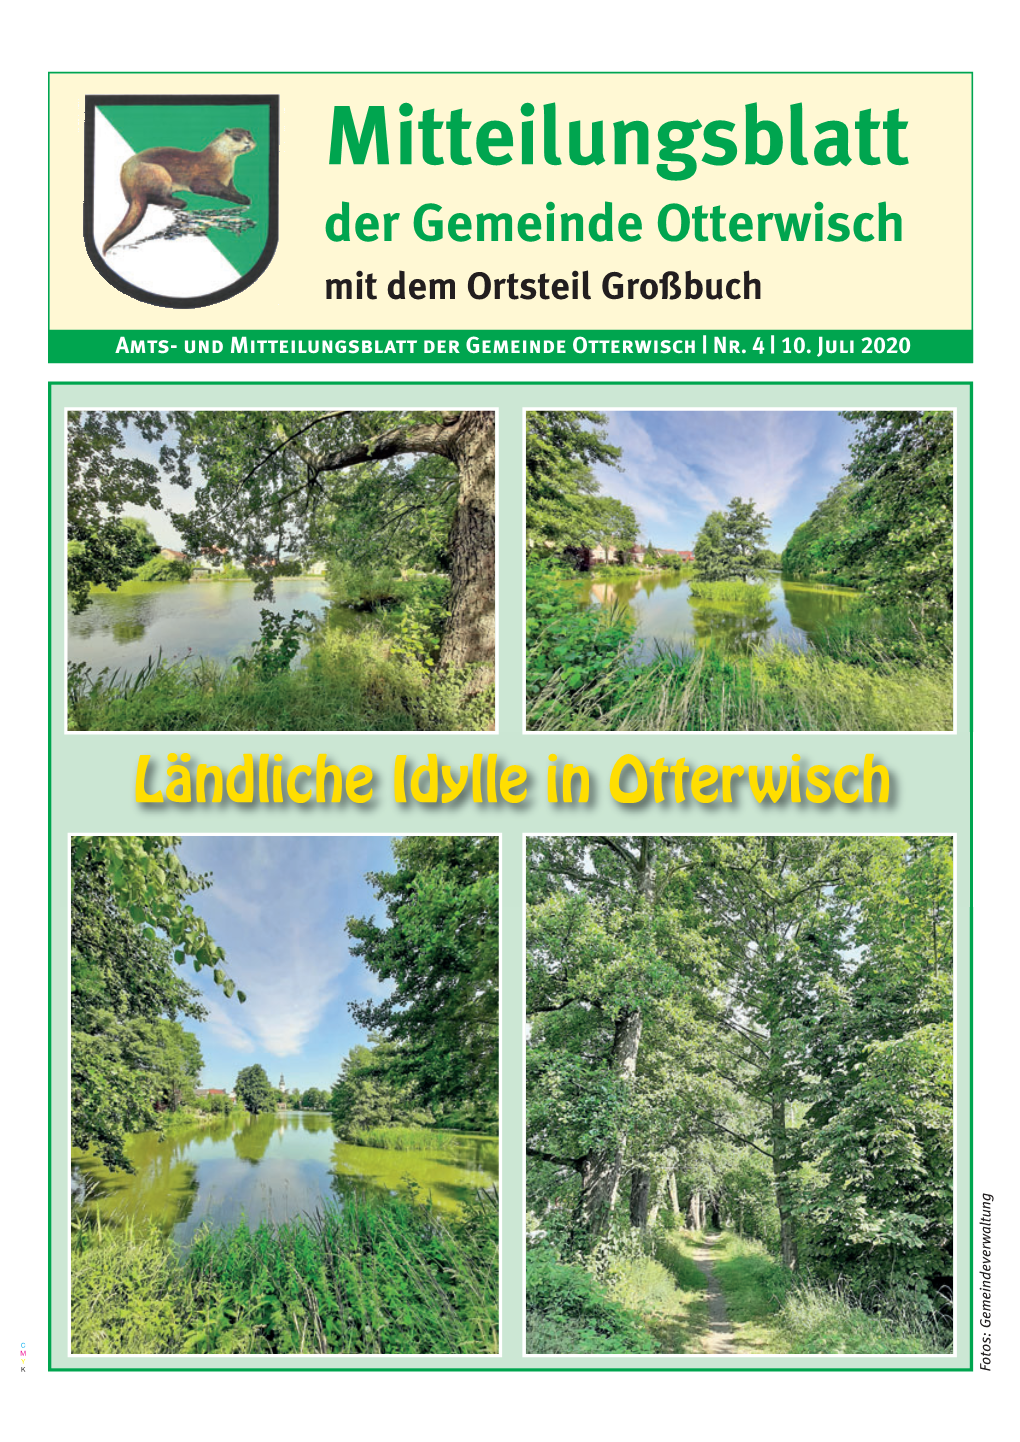 Mitteilungsblatt Der Gemeinde Otterwisch Mit Dem Ortsteil Großbuch Amts- Und Mitteilungsblatt Der Gemeinde Otterwisch | Nr